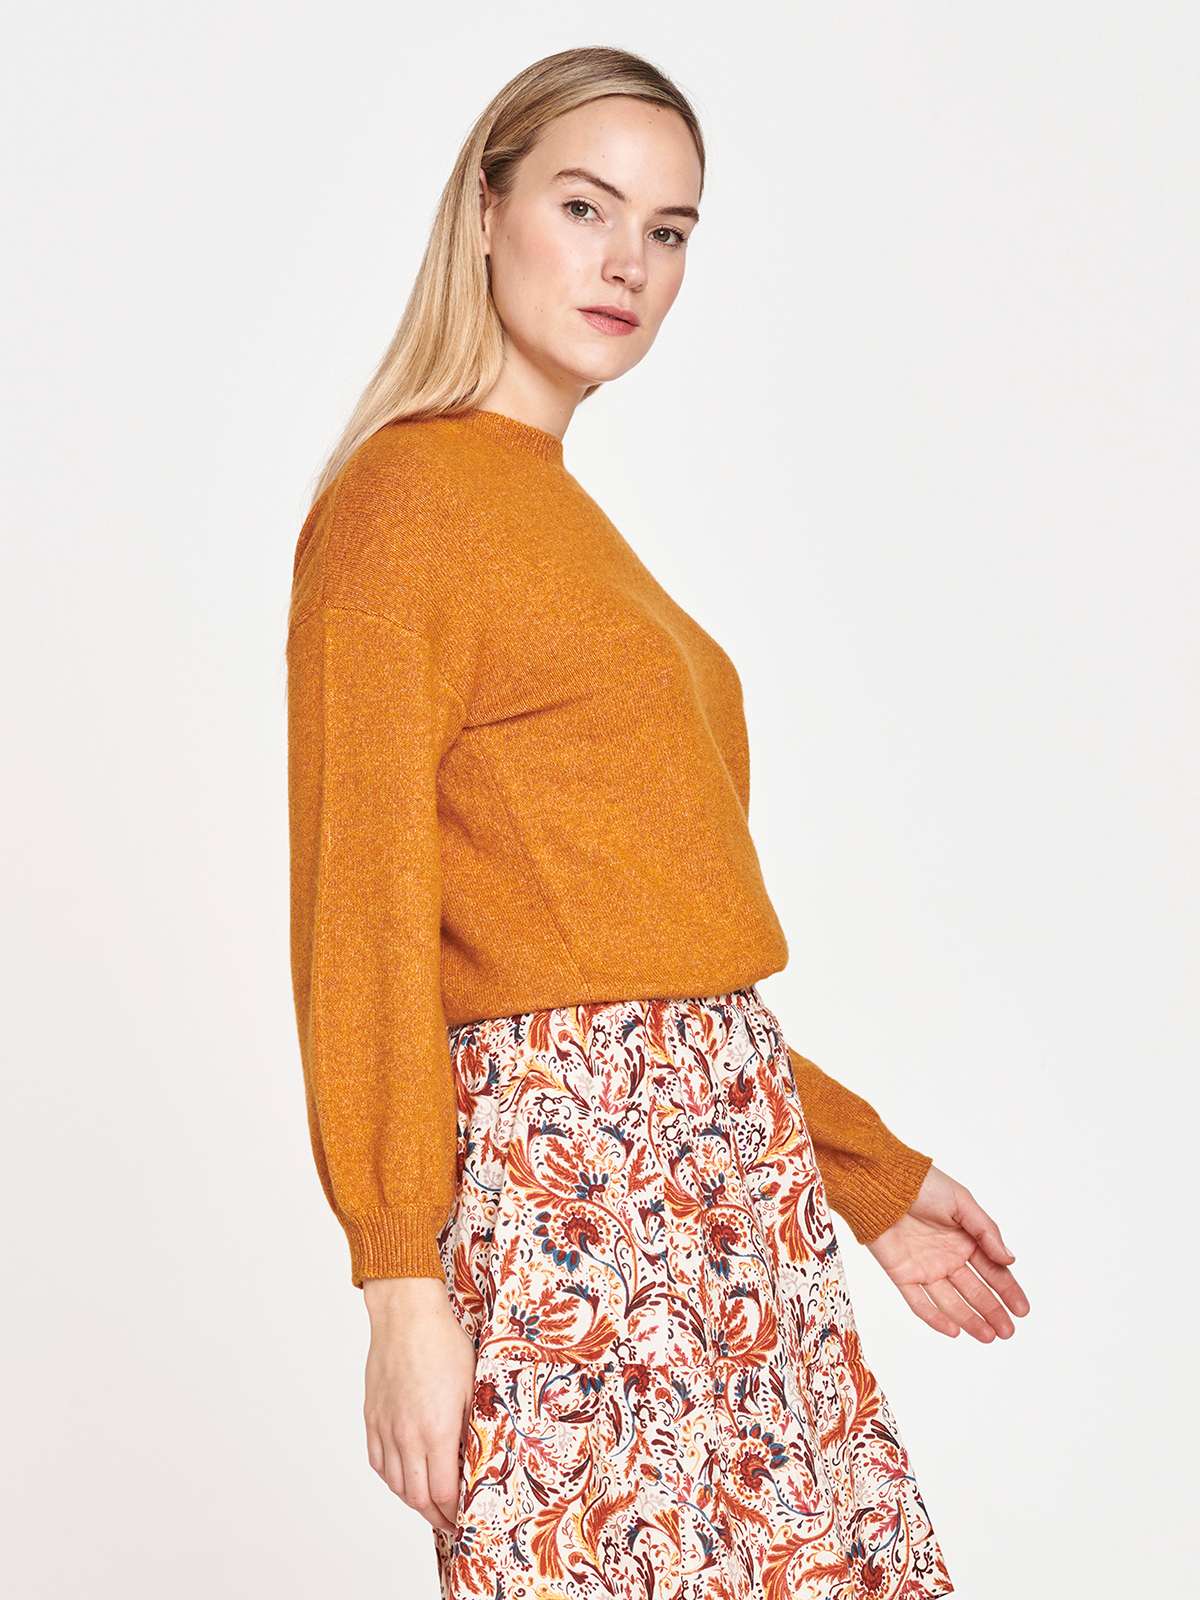 Takakura Hemp & Organic Cotton Mini Skirt - Multi